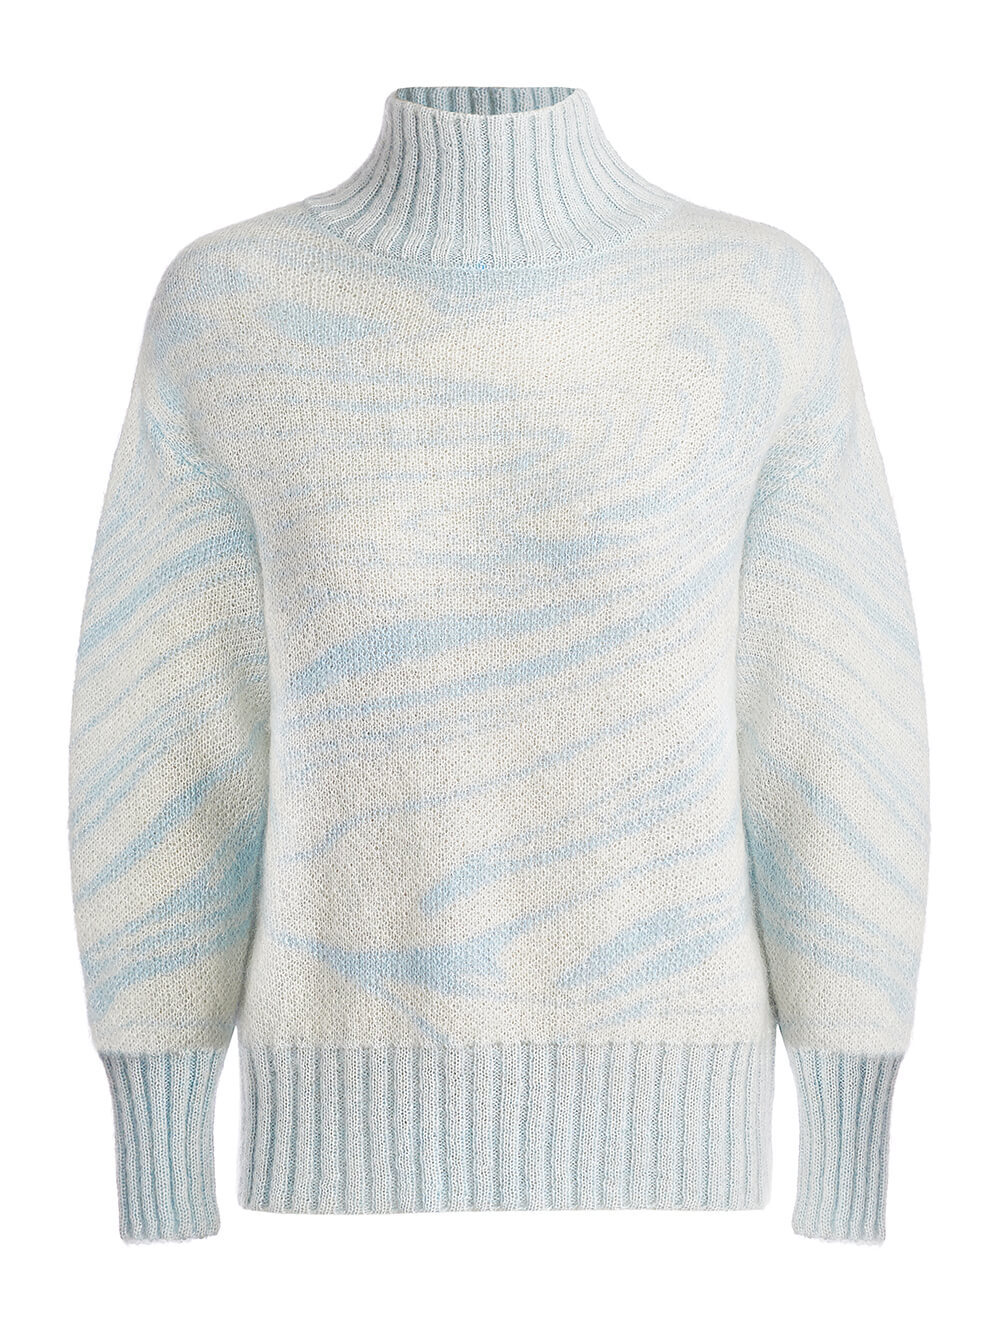 Женский свитер молочного цвета из мохера - фото 1